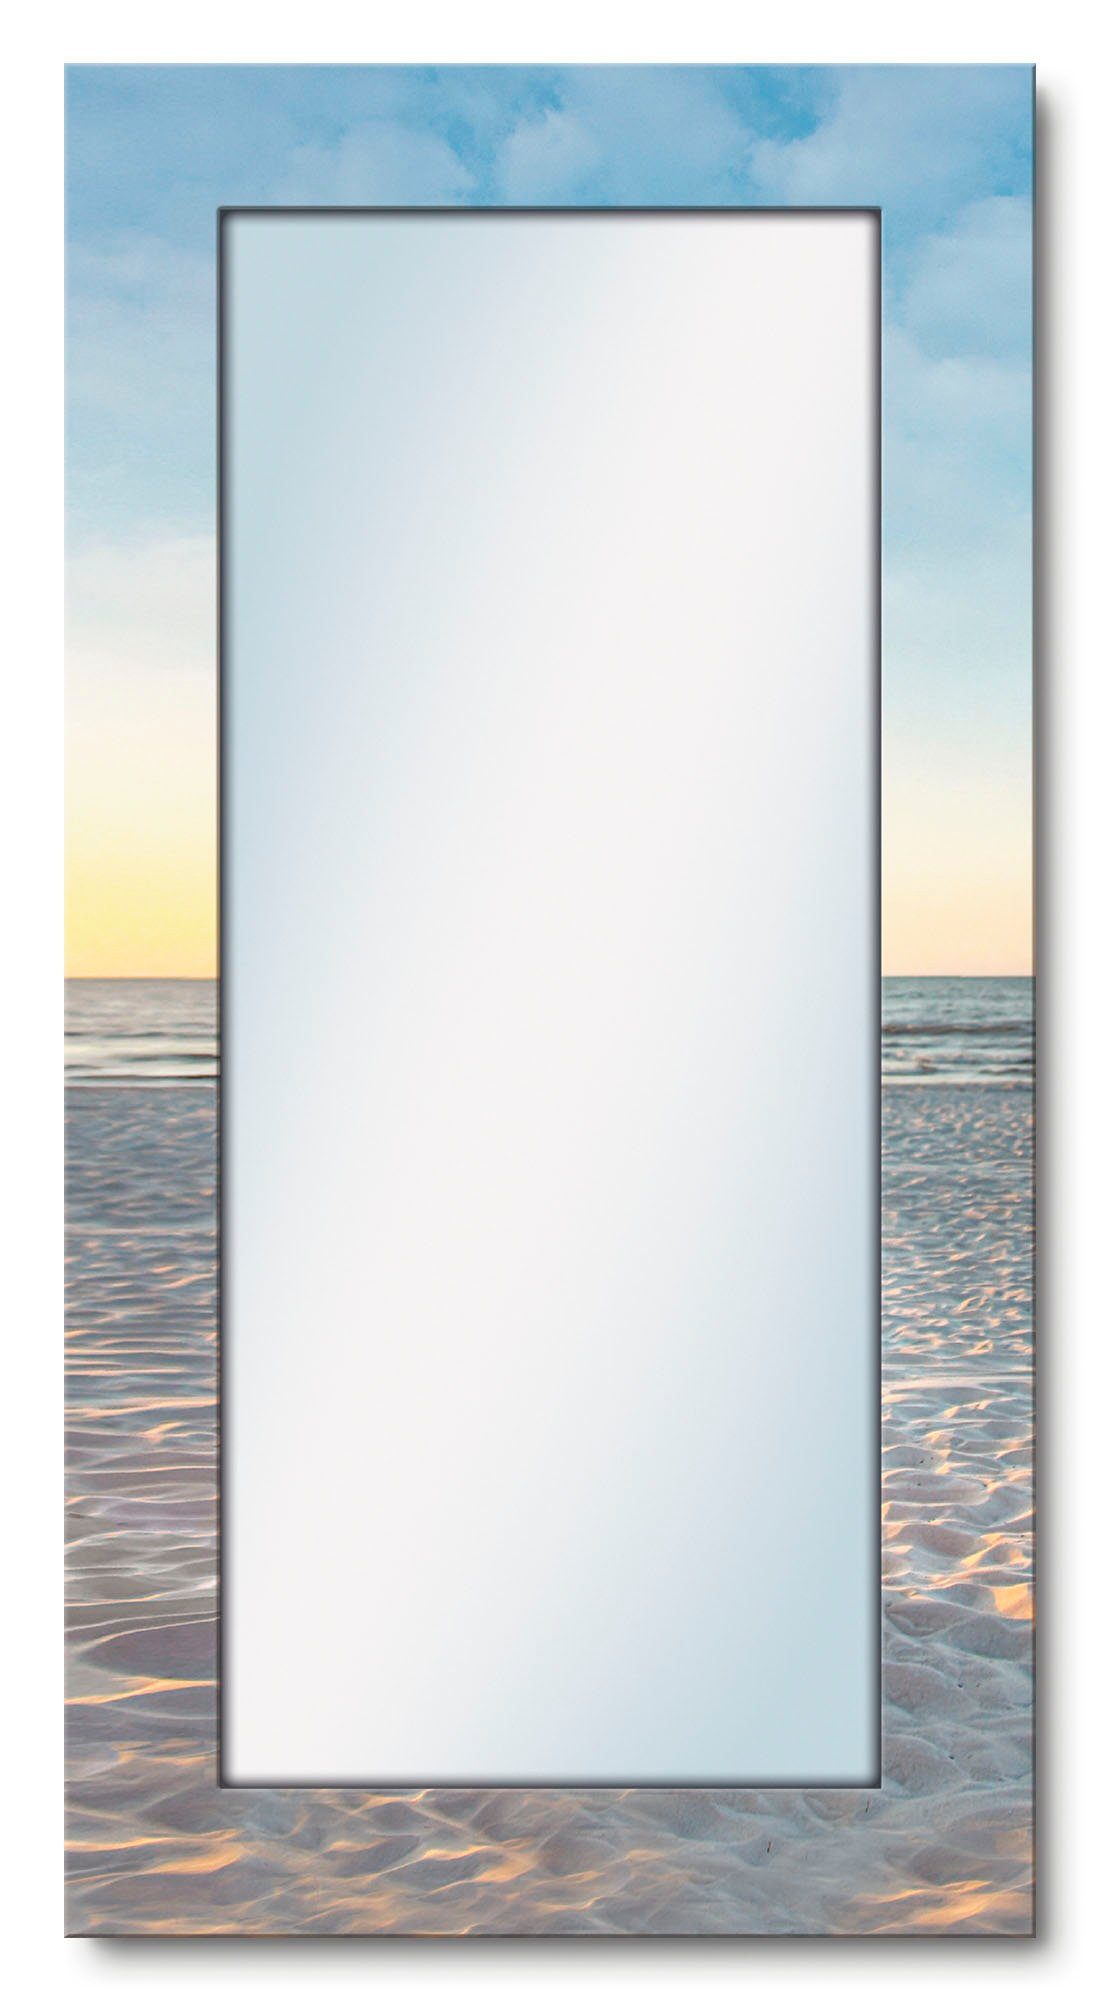 Artland Dekospiegel Ostsee7 - Strandkorb, gerahmter Ganzkörperspiegel, Wandspiegel, mit Motivrahmen, Landhaus